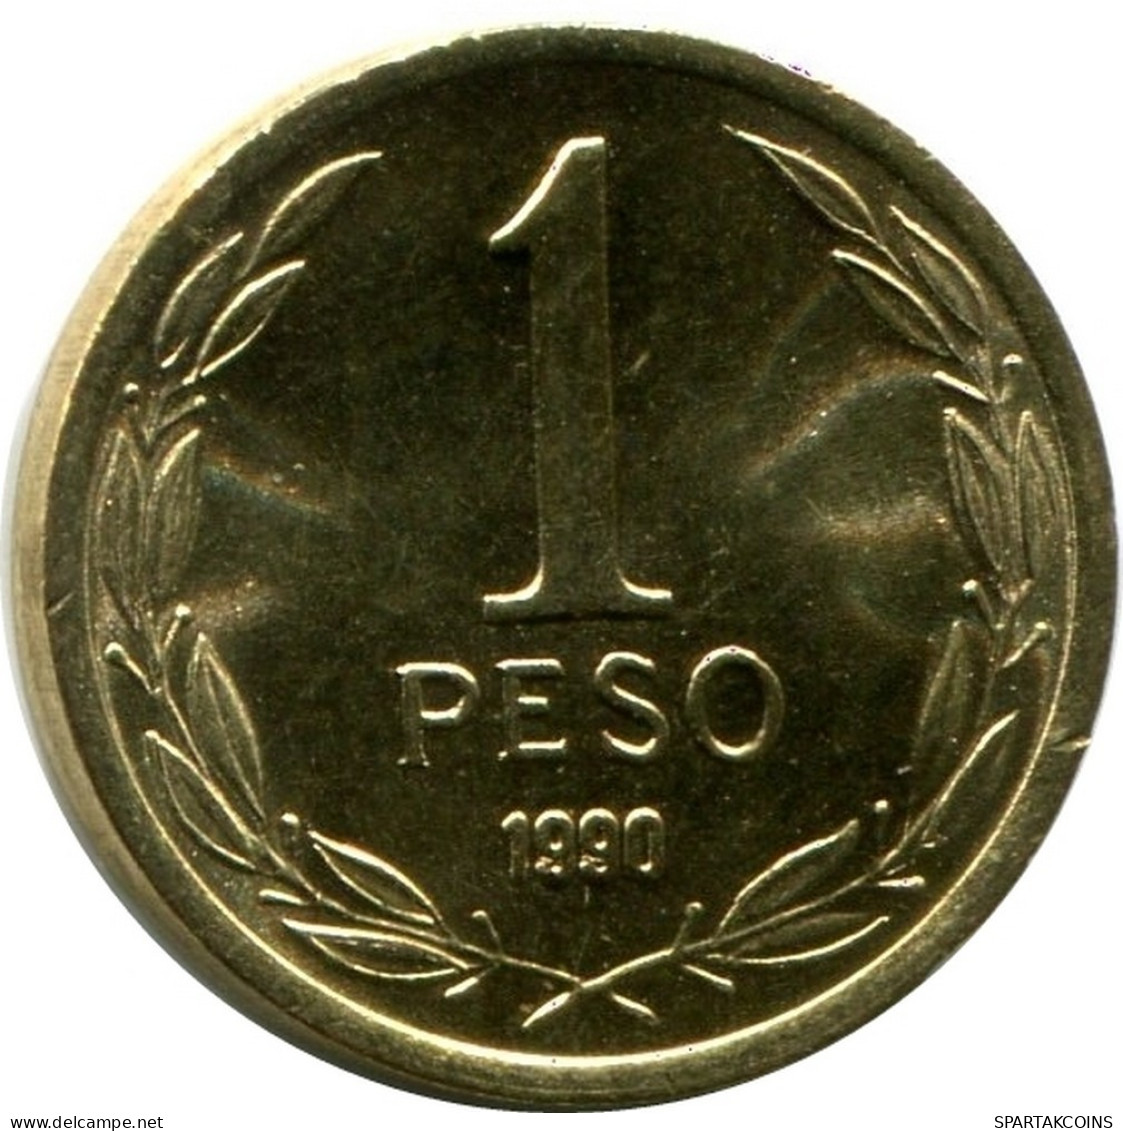 1 PESO 1990 CHILE UNC Coin #M10148.U.A - Chile